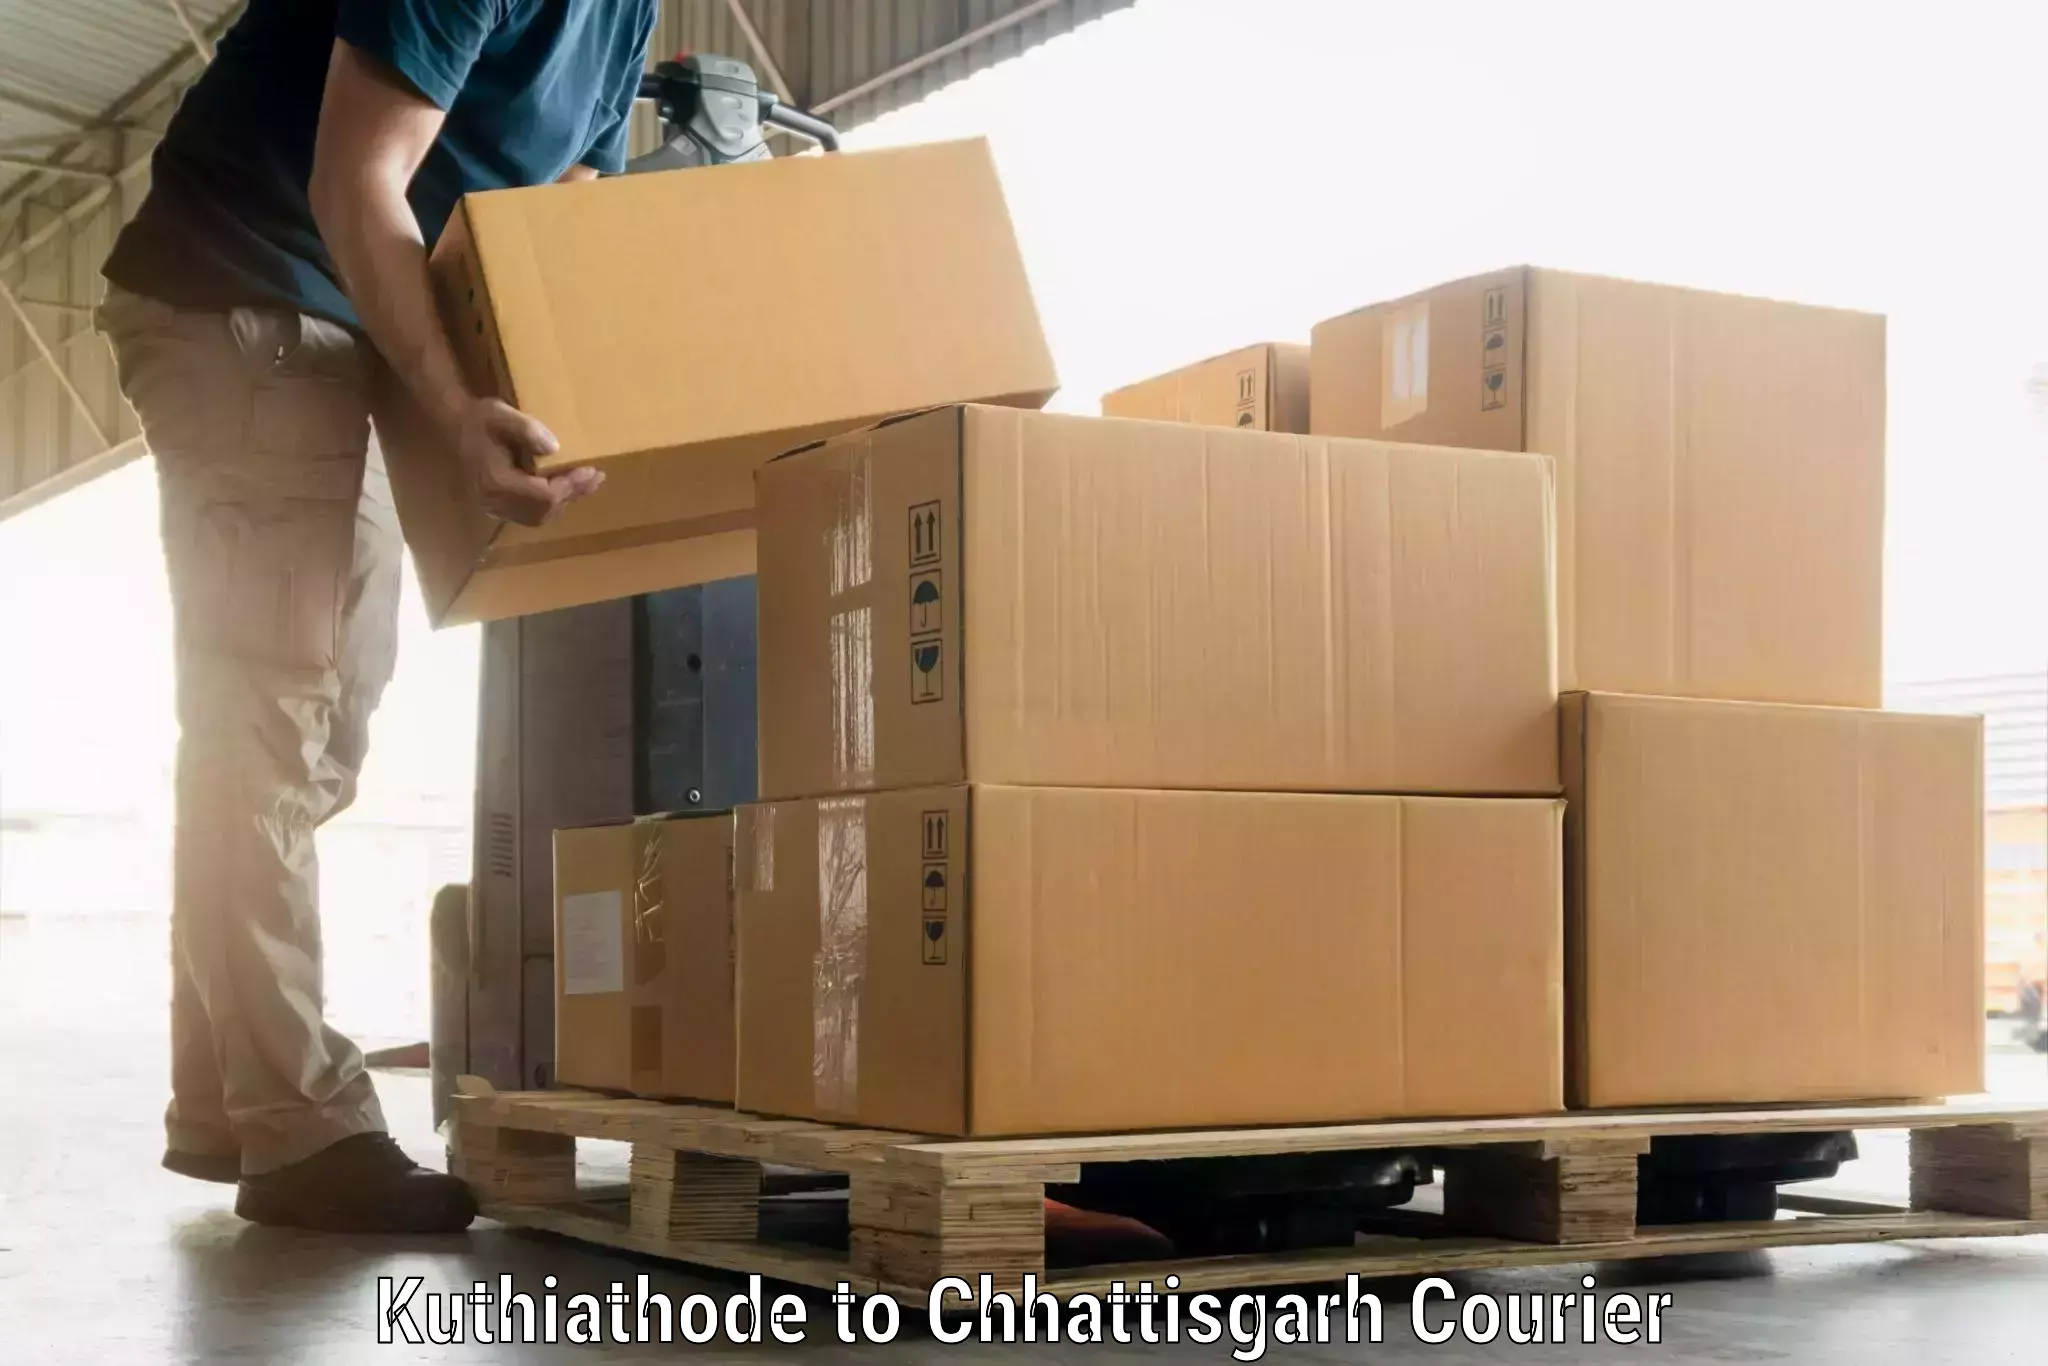 Electronic items luggage shipping Kuthiathode to Korea Chhattisgarh